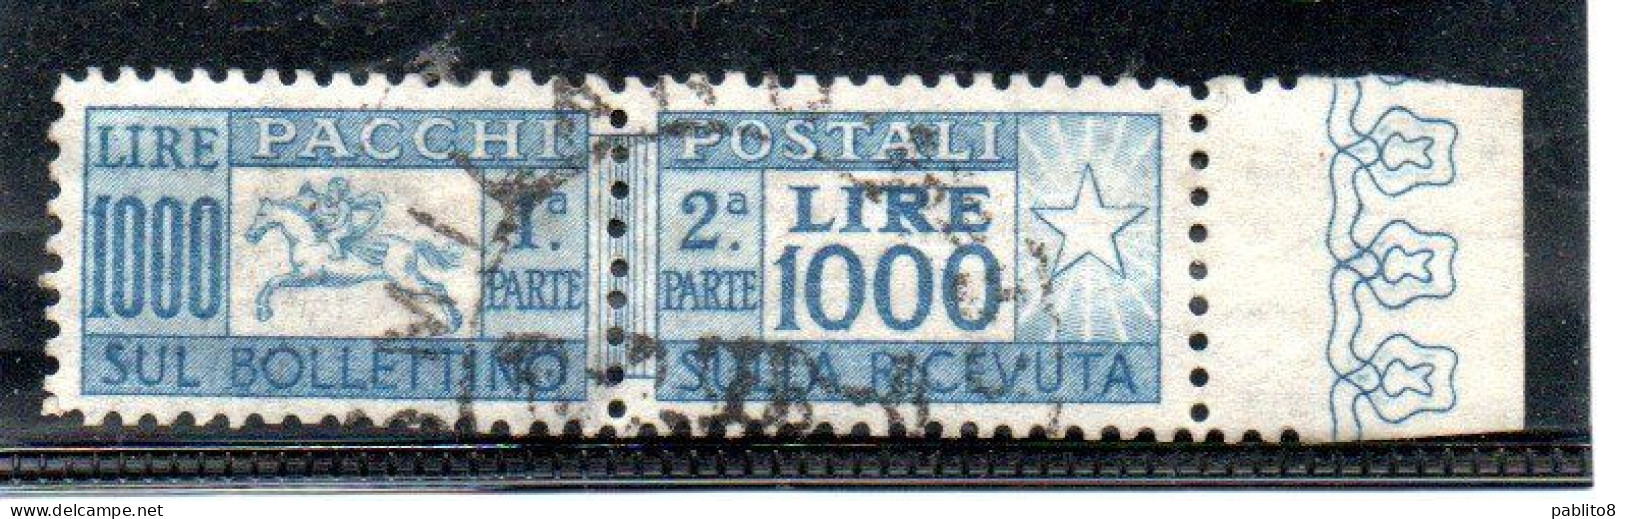 ITALIA REPUBBLICA ITALY REPUBLIC 1954 CAVALLINO PACCHI LIRE 1000 RUOTA WHEEL OTTIMA CENTRATURA BORDO USATO CERTIFICATO - Paketmarken